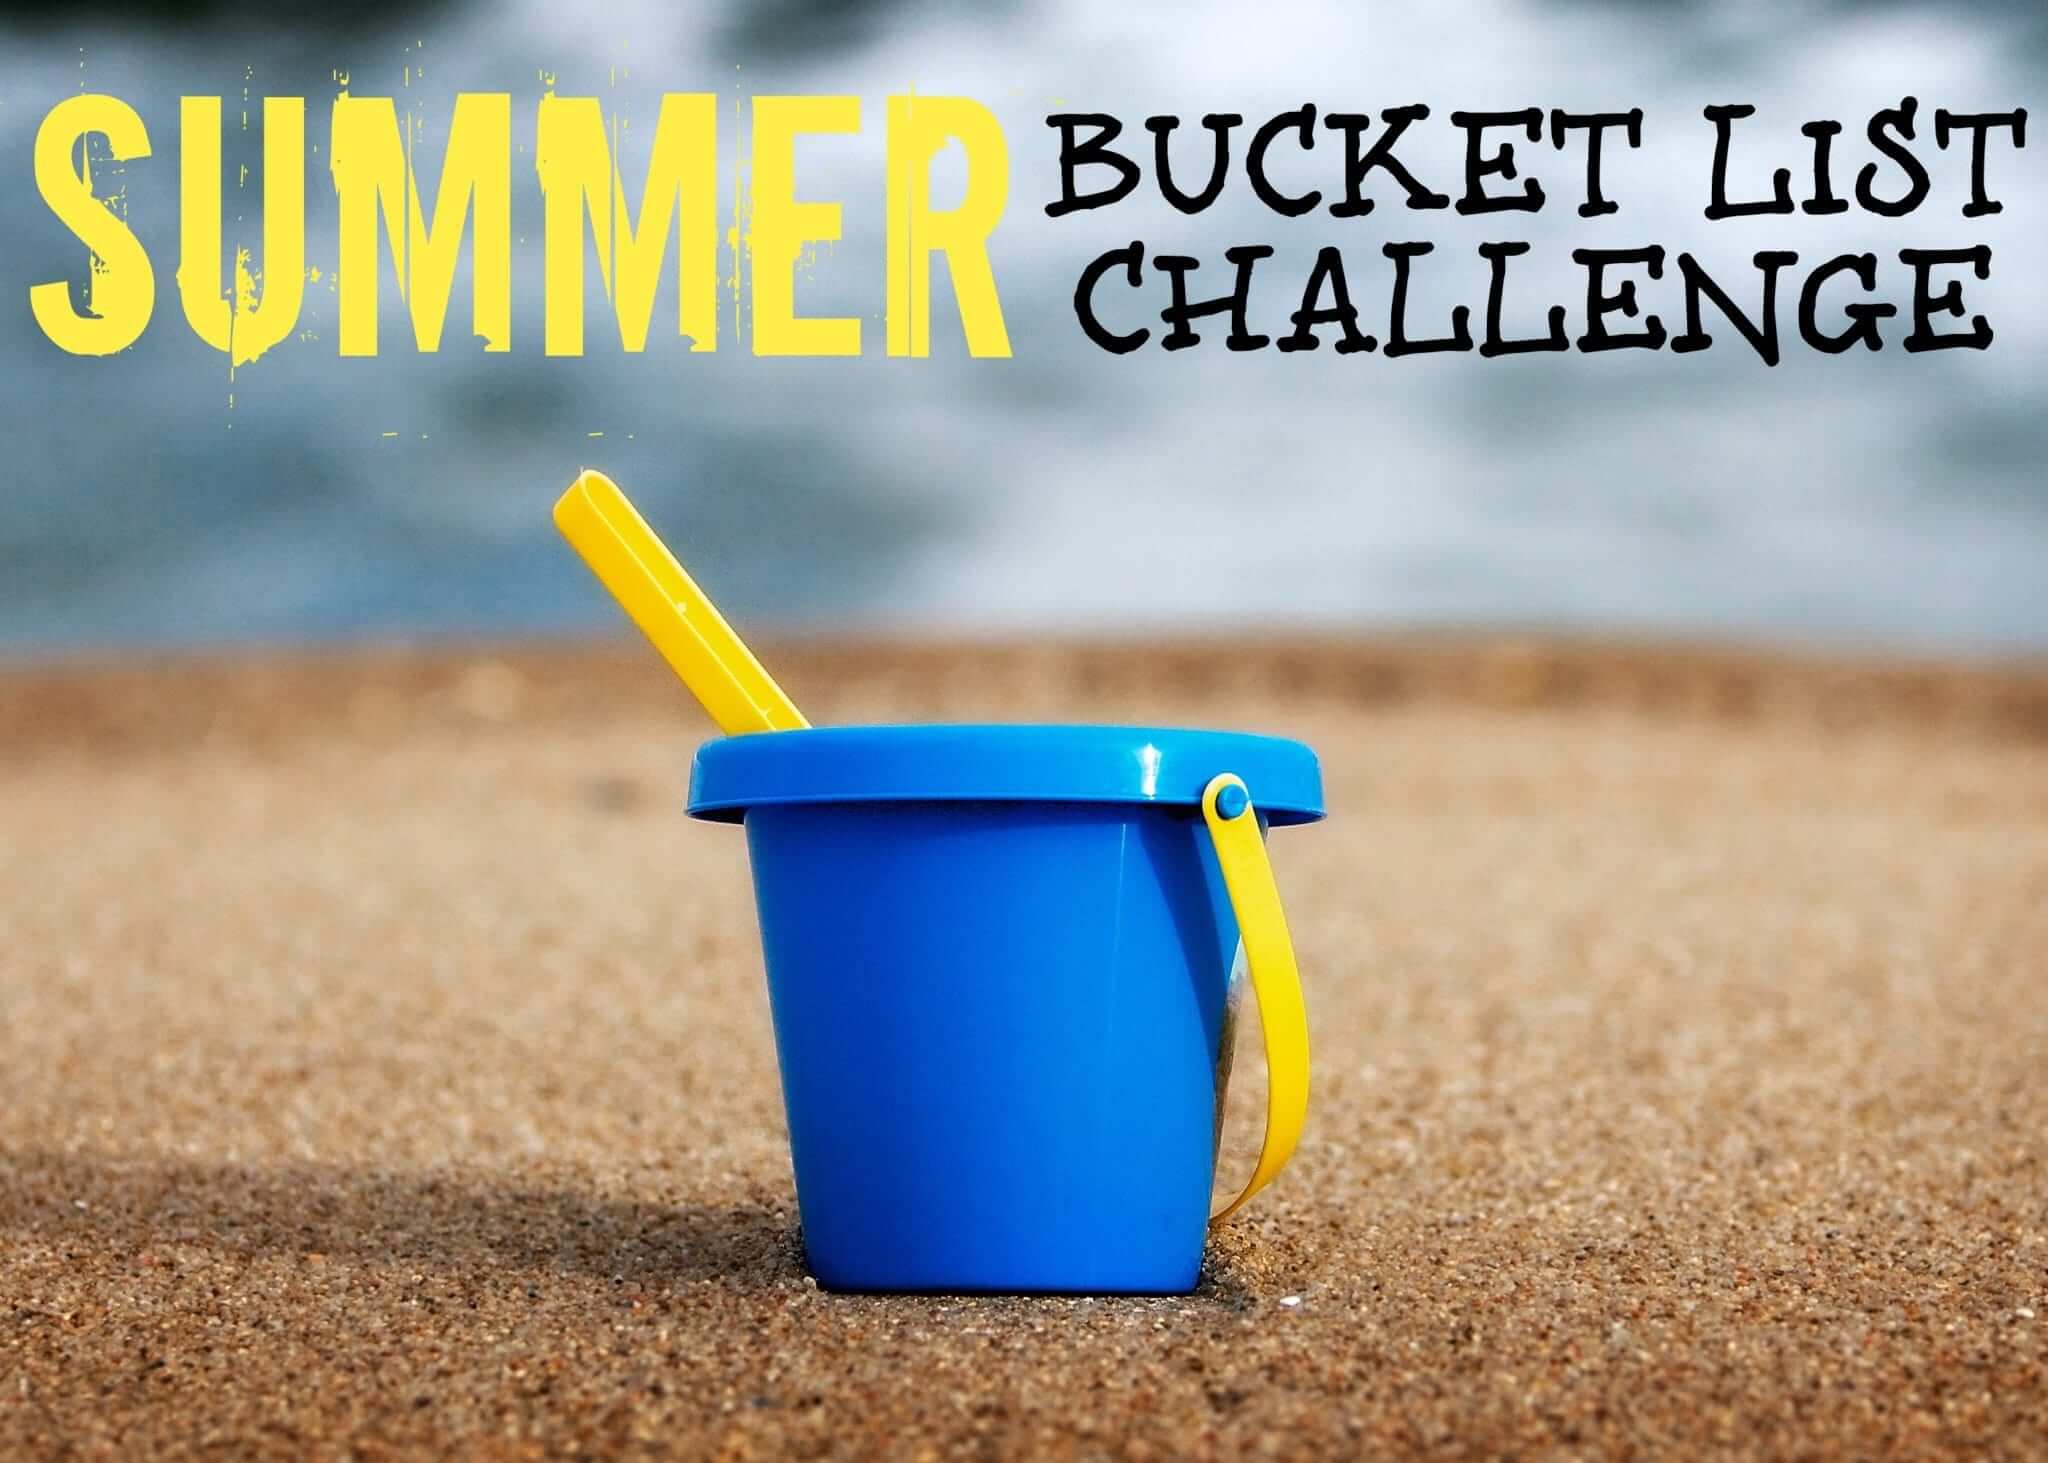 Summer Bucket List Challenge Week 2